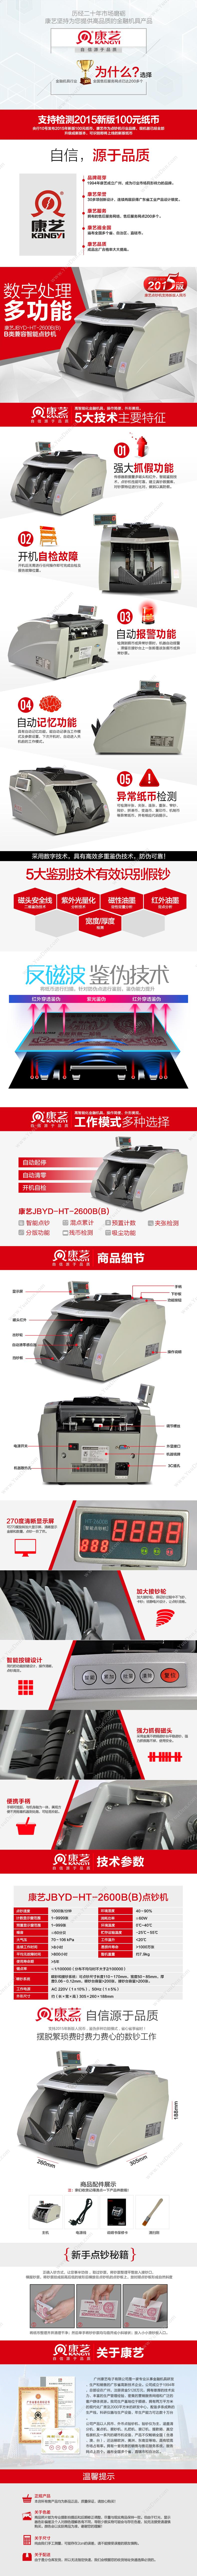 康艺 HT-2600B(B) 单屏点钞机